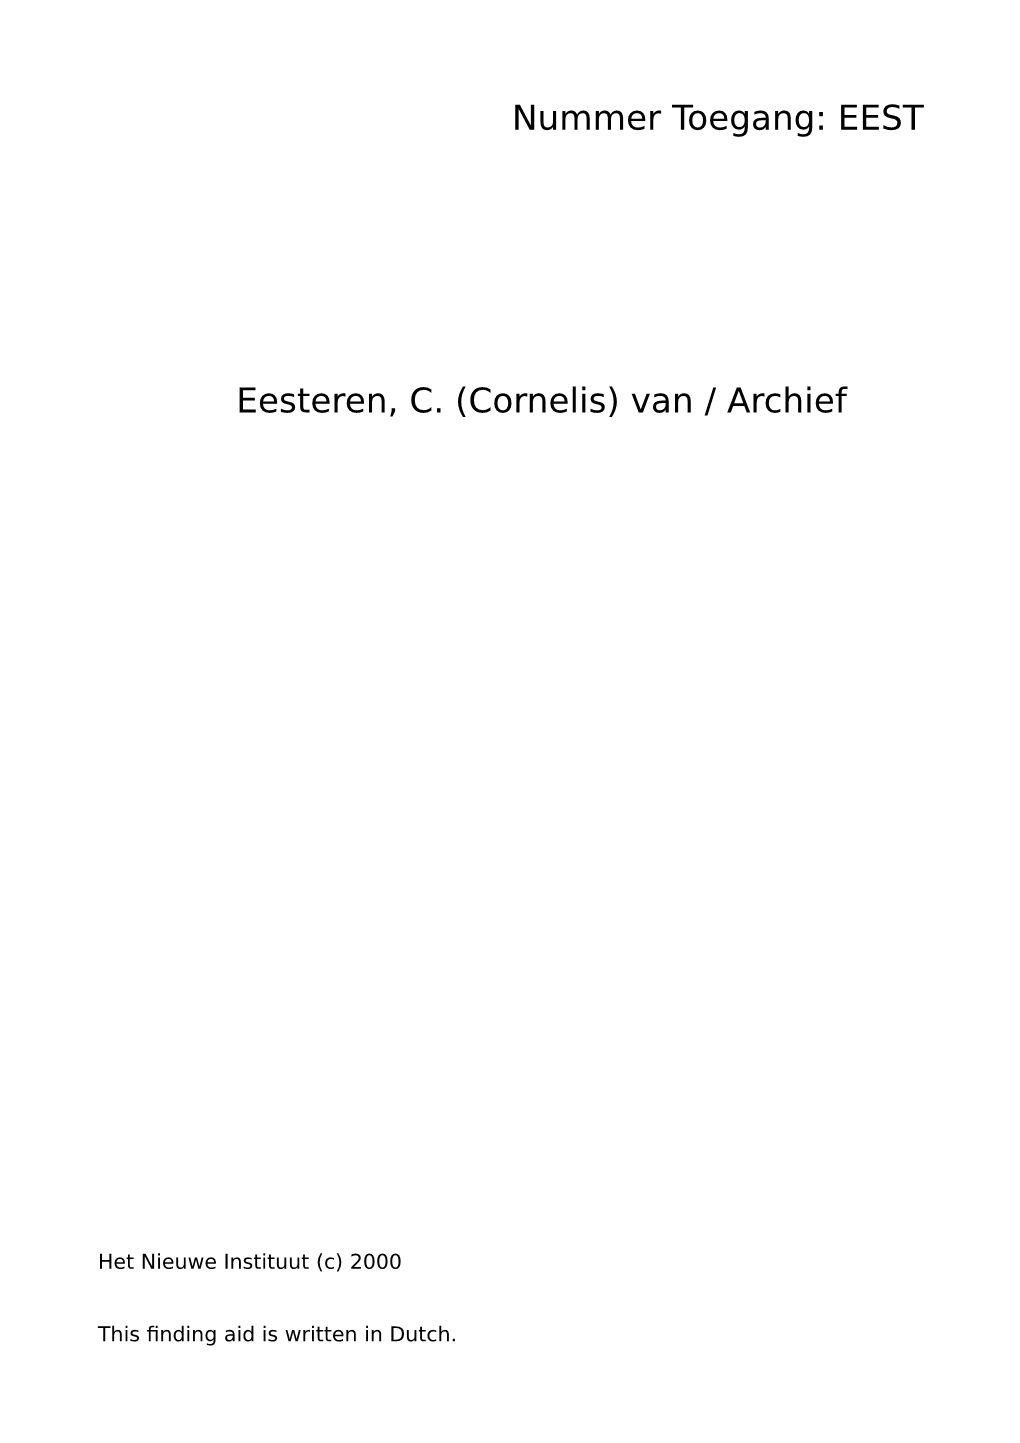 EEST Eesteren, C. (Cornelis) Van / Archief 3